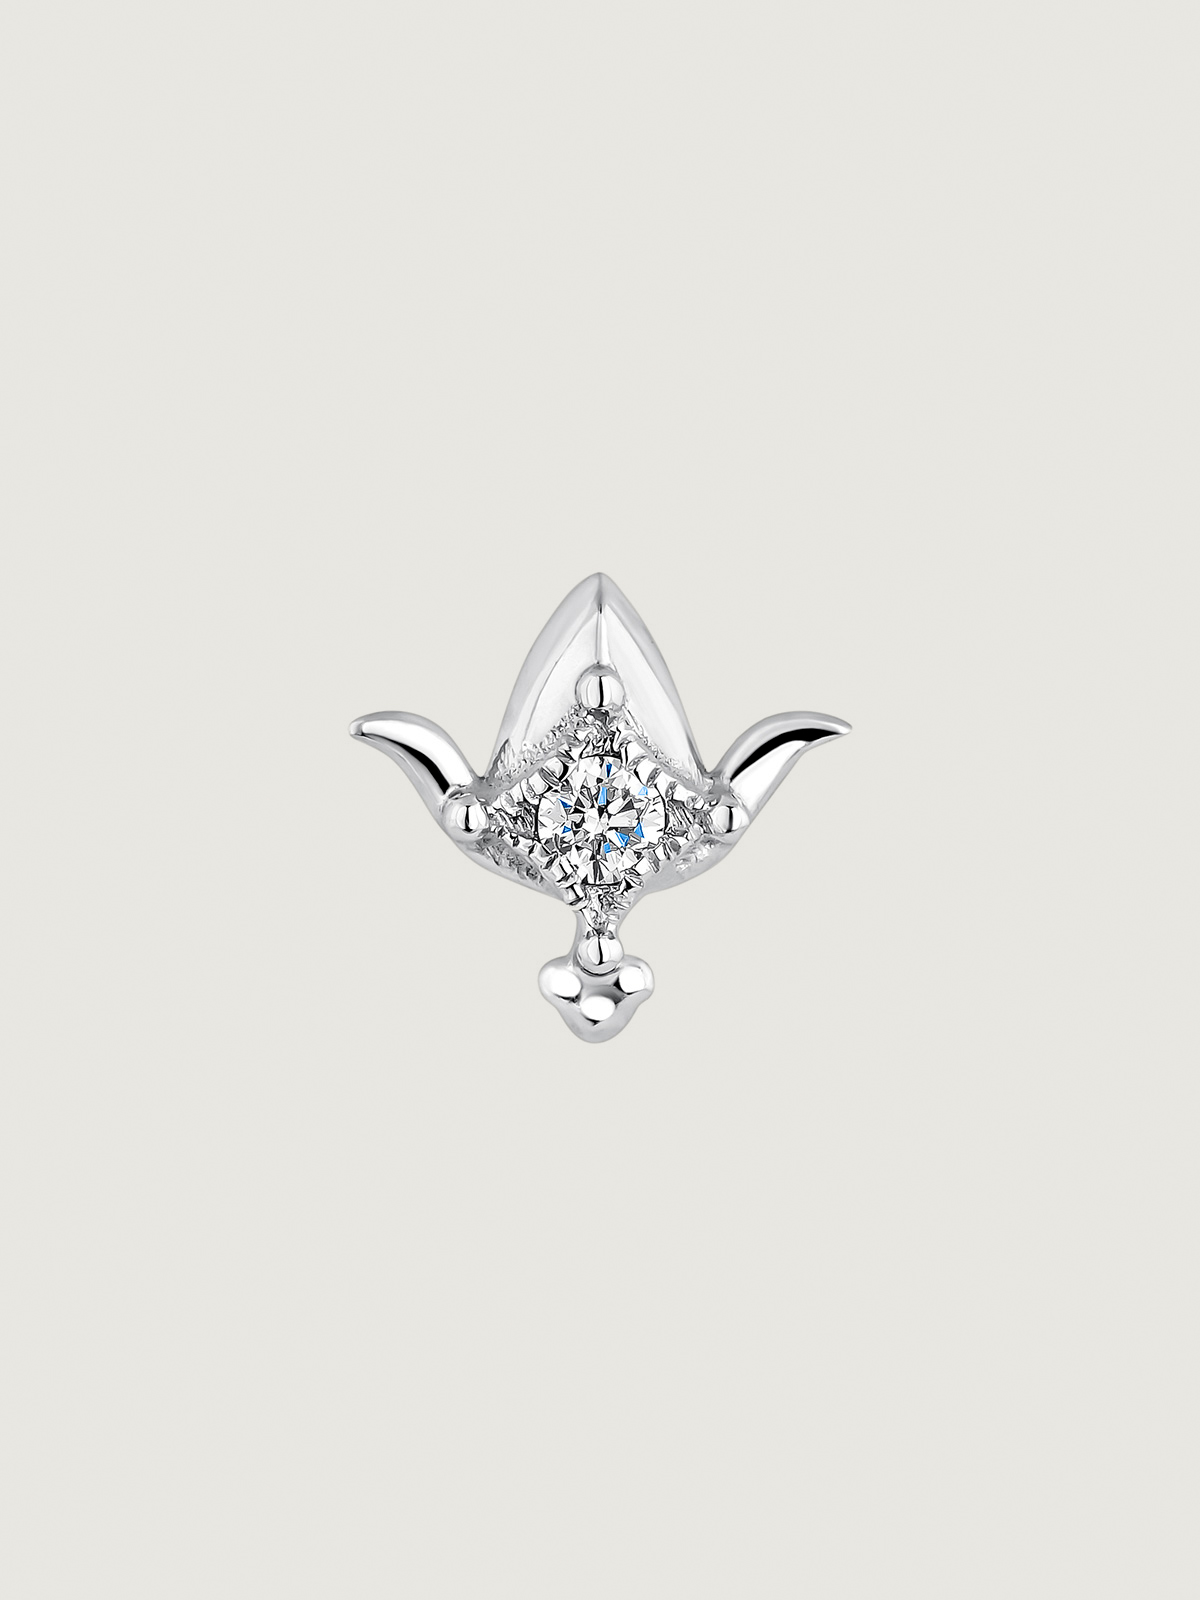 Boucle d'oreille individuelle en or blanc 9K avec des diamants en forme de fleur de lotus.